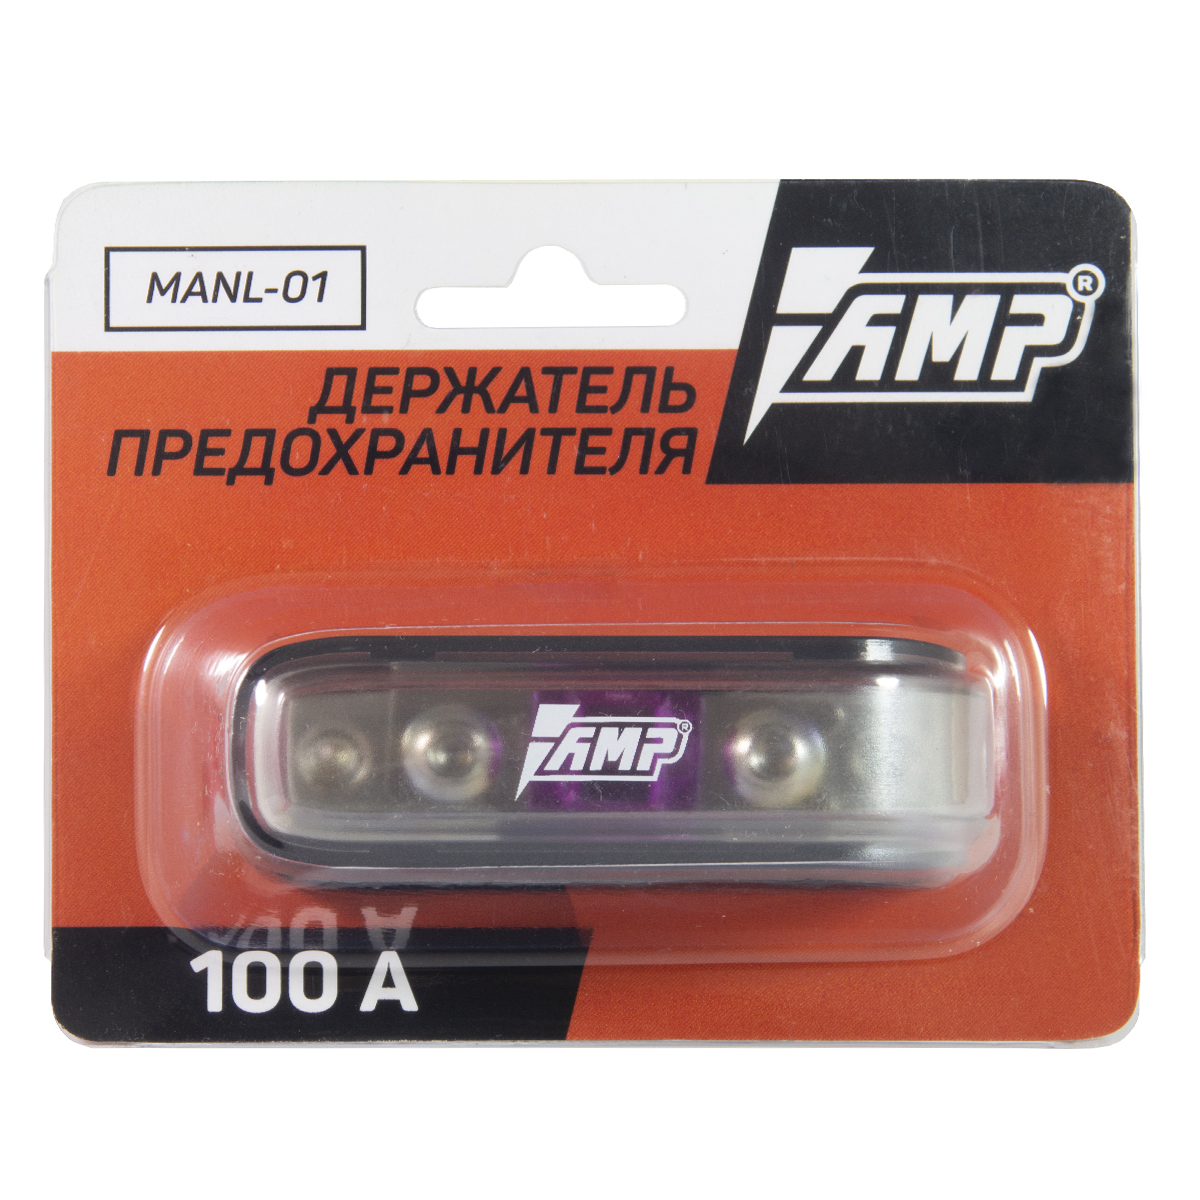 Держатель предохранителя AMP MANL-01 (100 A)